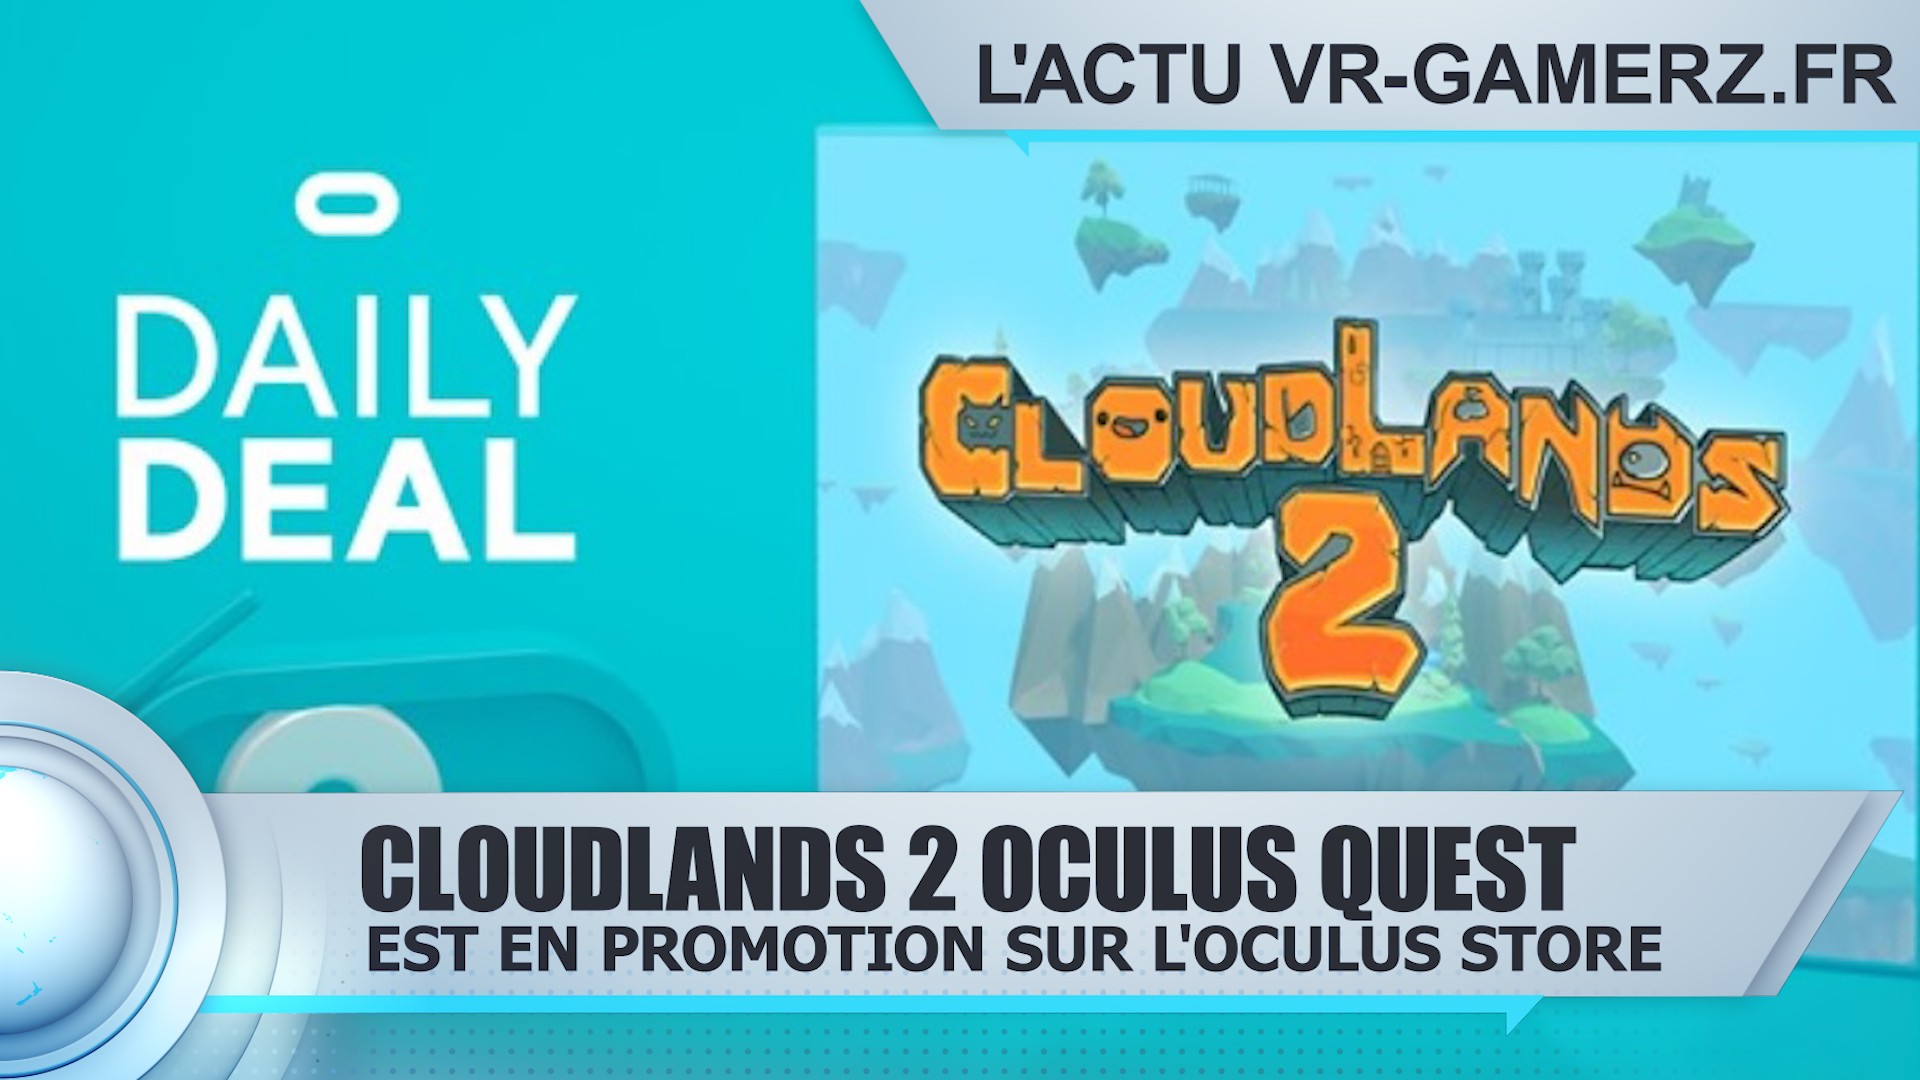 Cloudlands 2 Oculus quest est en promotion